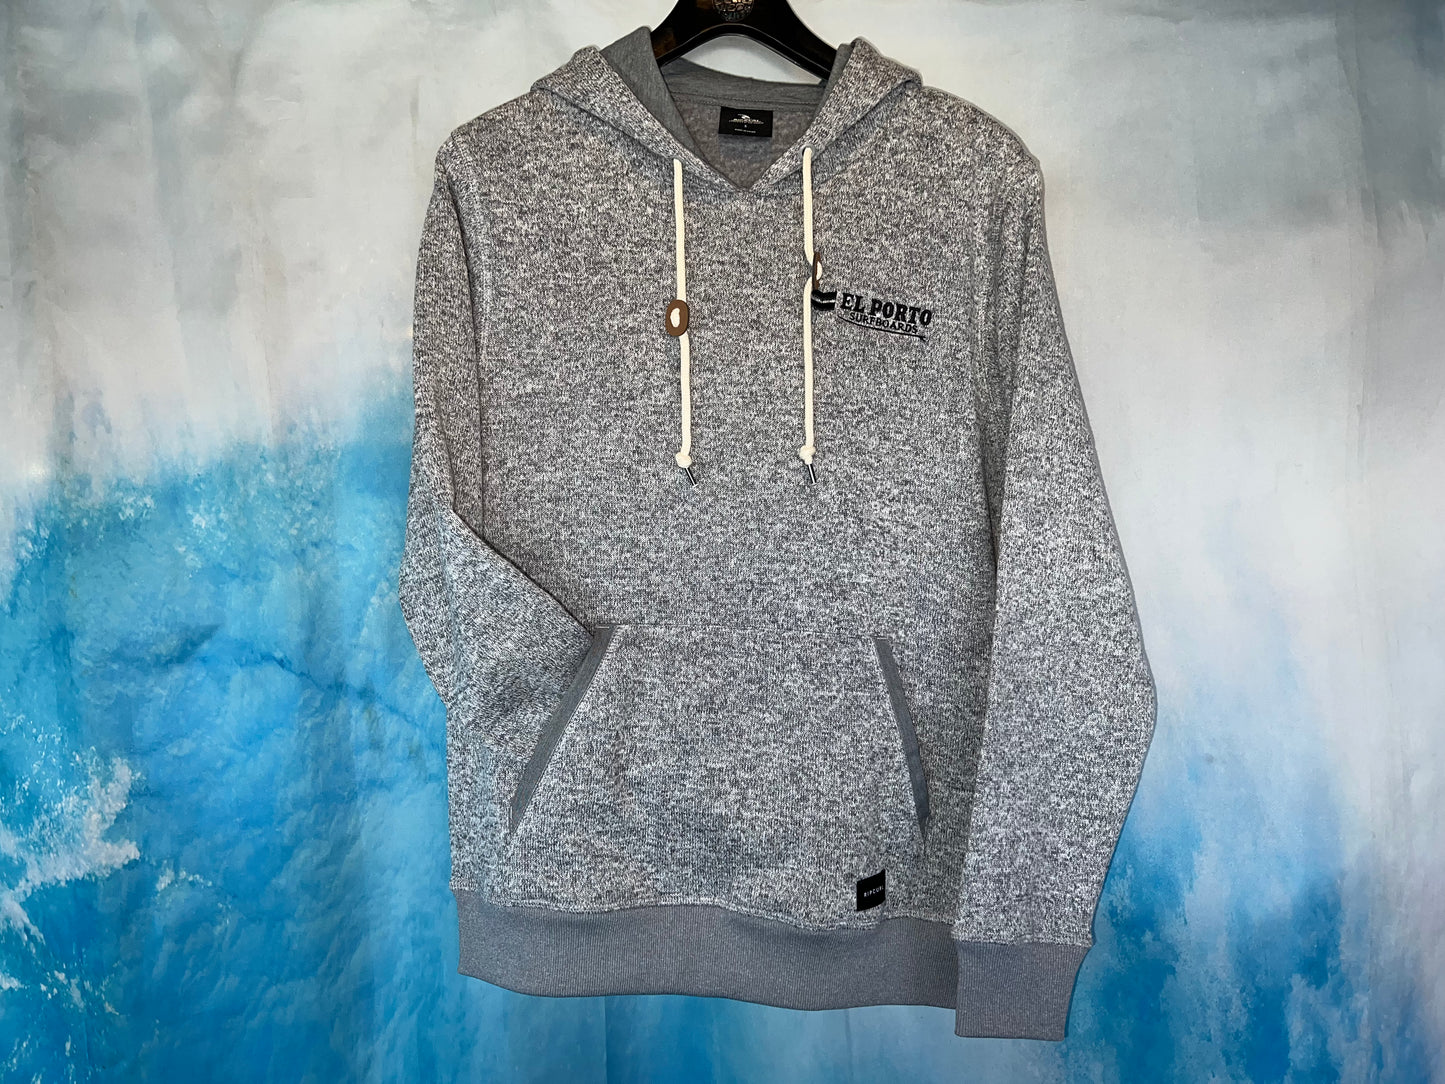 El Porto Surf Shop x Rip Curl Grey Crescent Hood